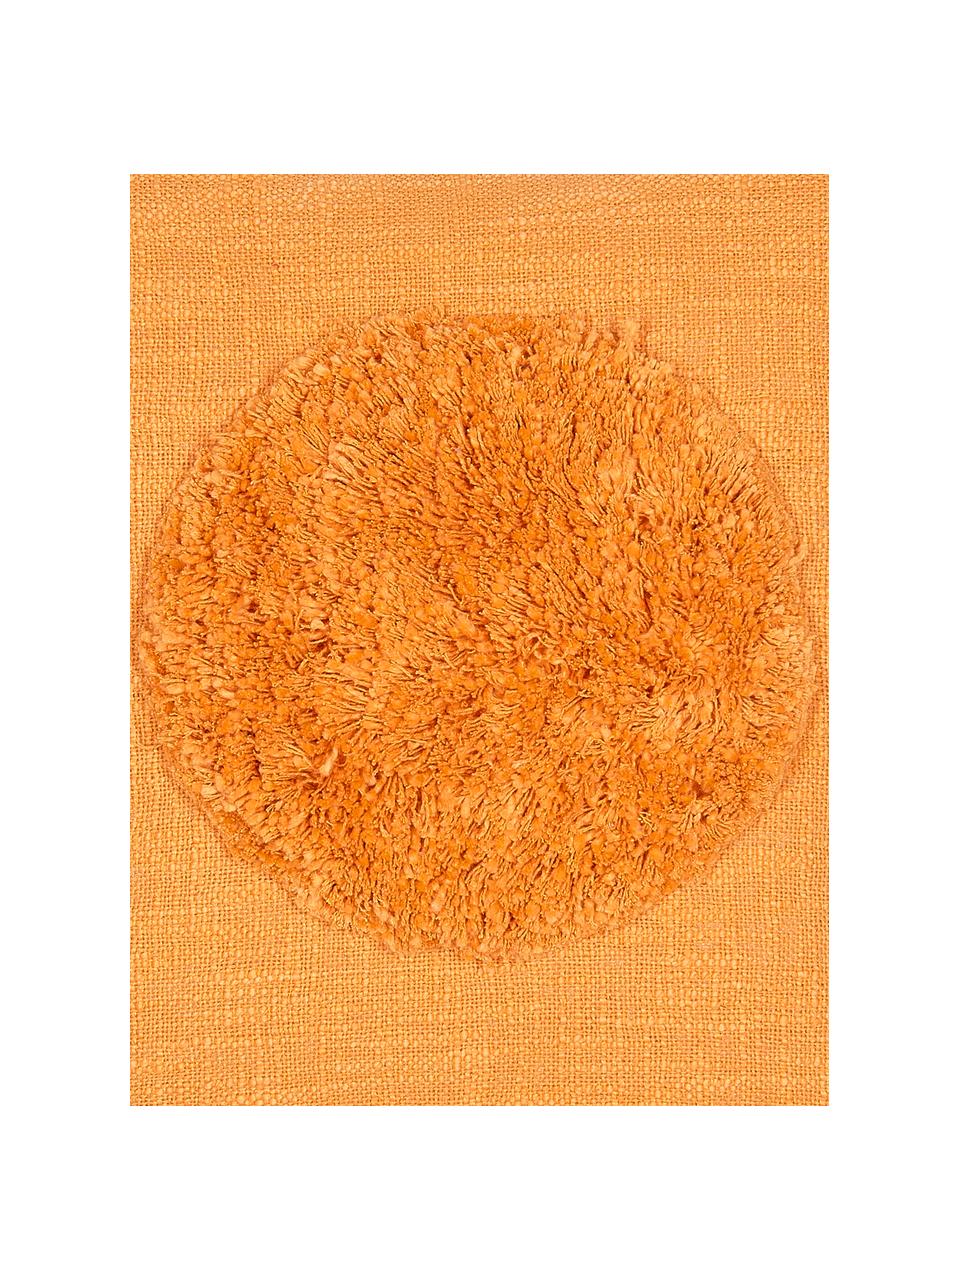 Kussenhoes Sun, Biokatoen, Geel, 45 x 45 cm